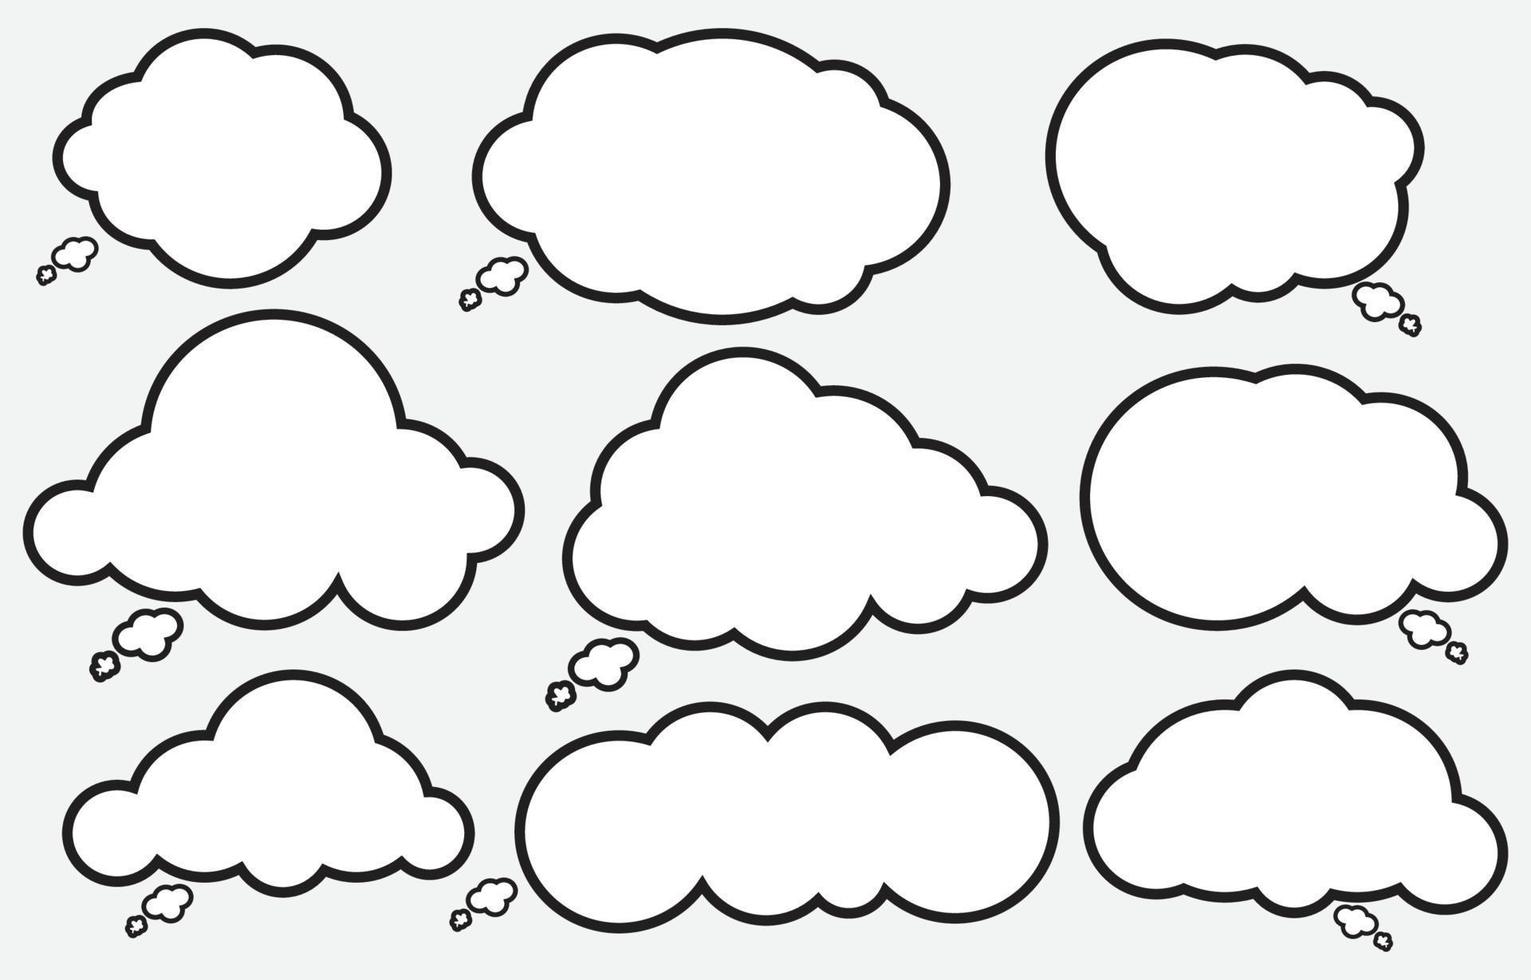 Legen Sie Sprechblasen auf weißem Hintergrund fest. Chat-Box oder Chat-Vektor-Doodle-Nachricht oder Kommunikationssymbolwolke, die für Comics und minimalen Nachrichtendialog spricht vektor